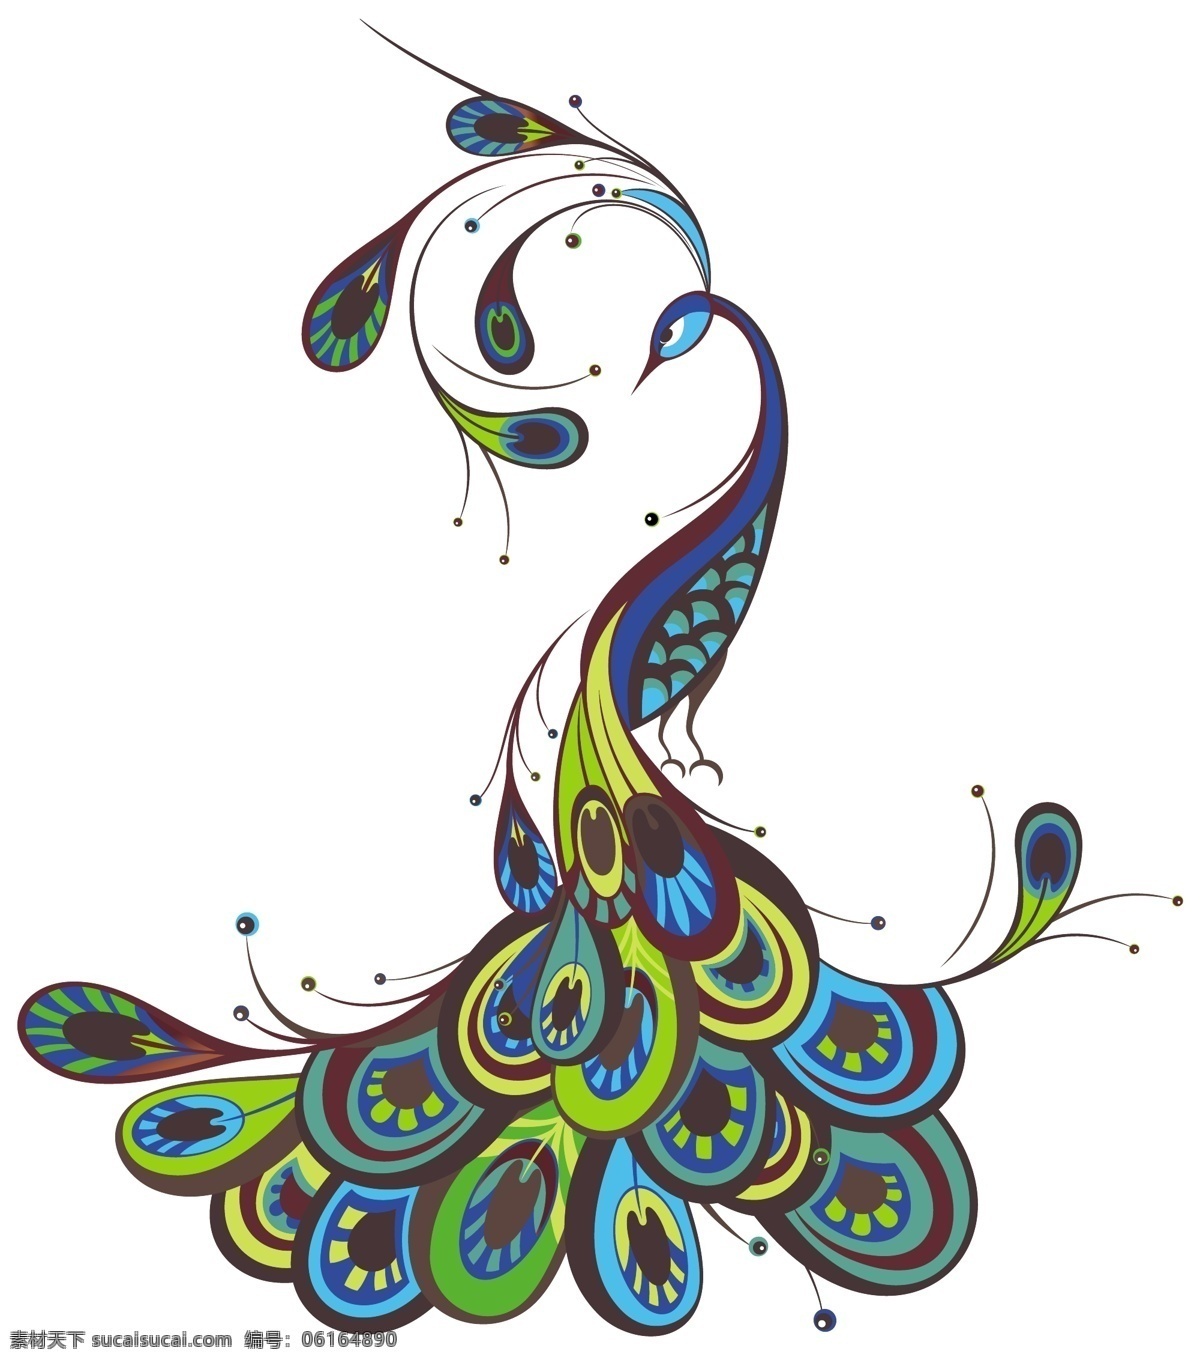 创意彩色孔雀 创意 彩色孔雀 布匹印花 纺织品图案 花型 面料设计 抽象花 里料花纹 鸟类 矢量花型 生物世界